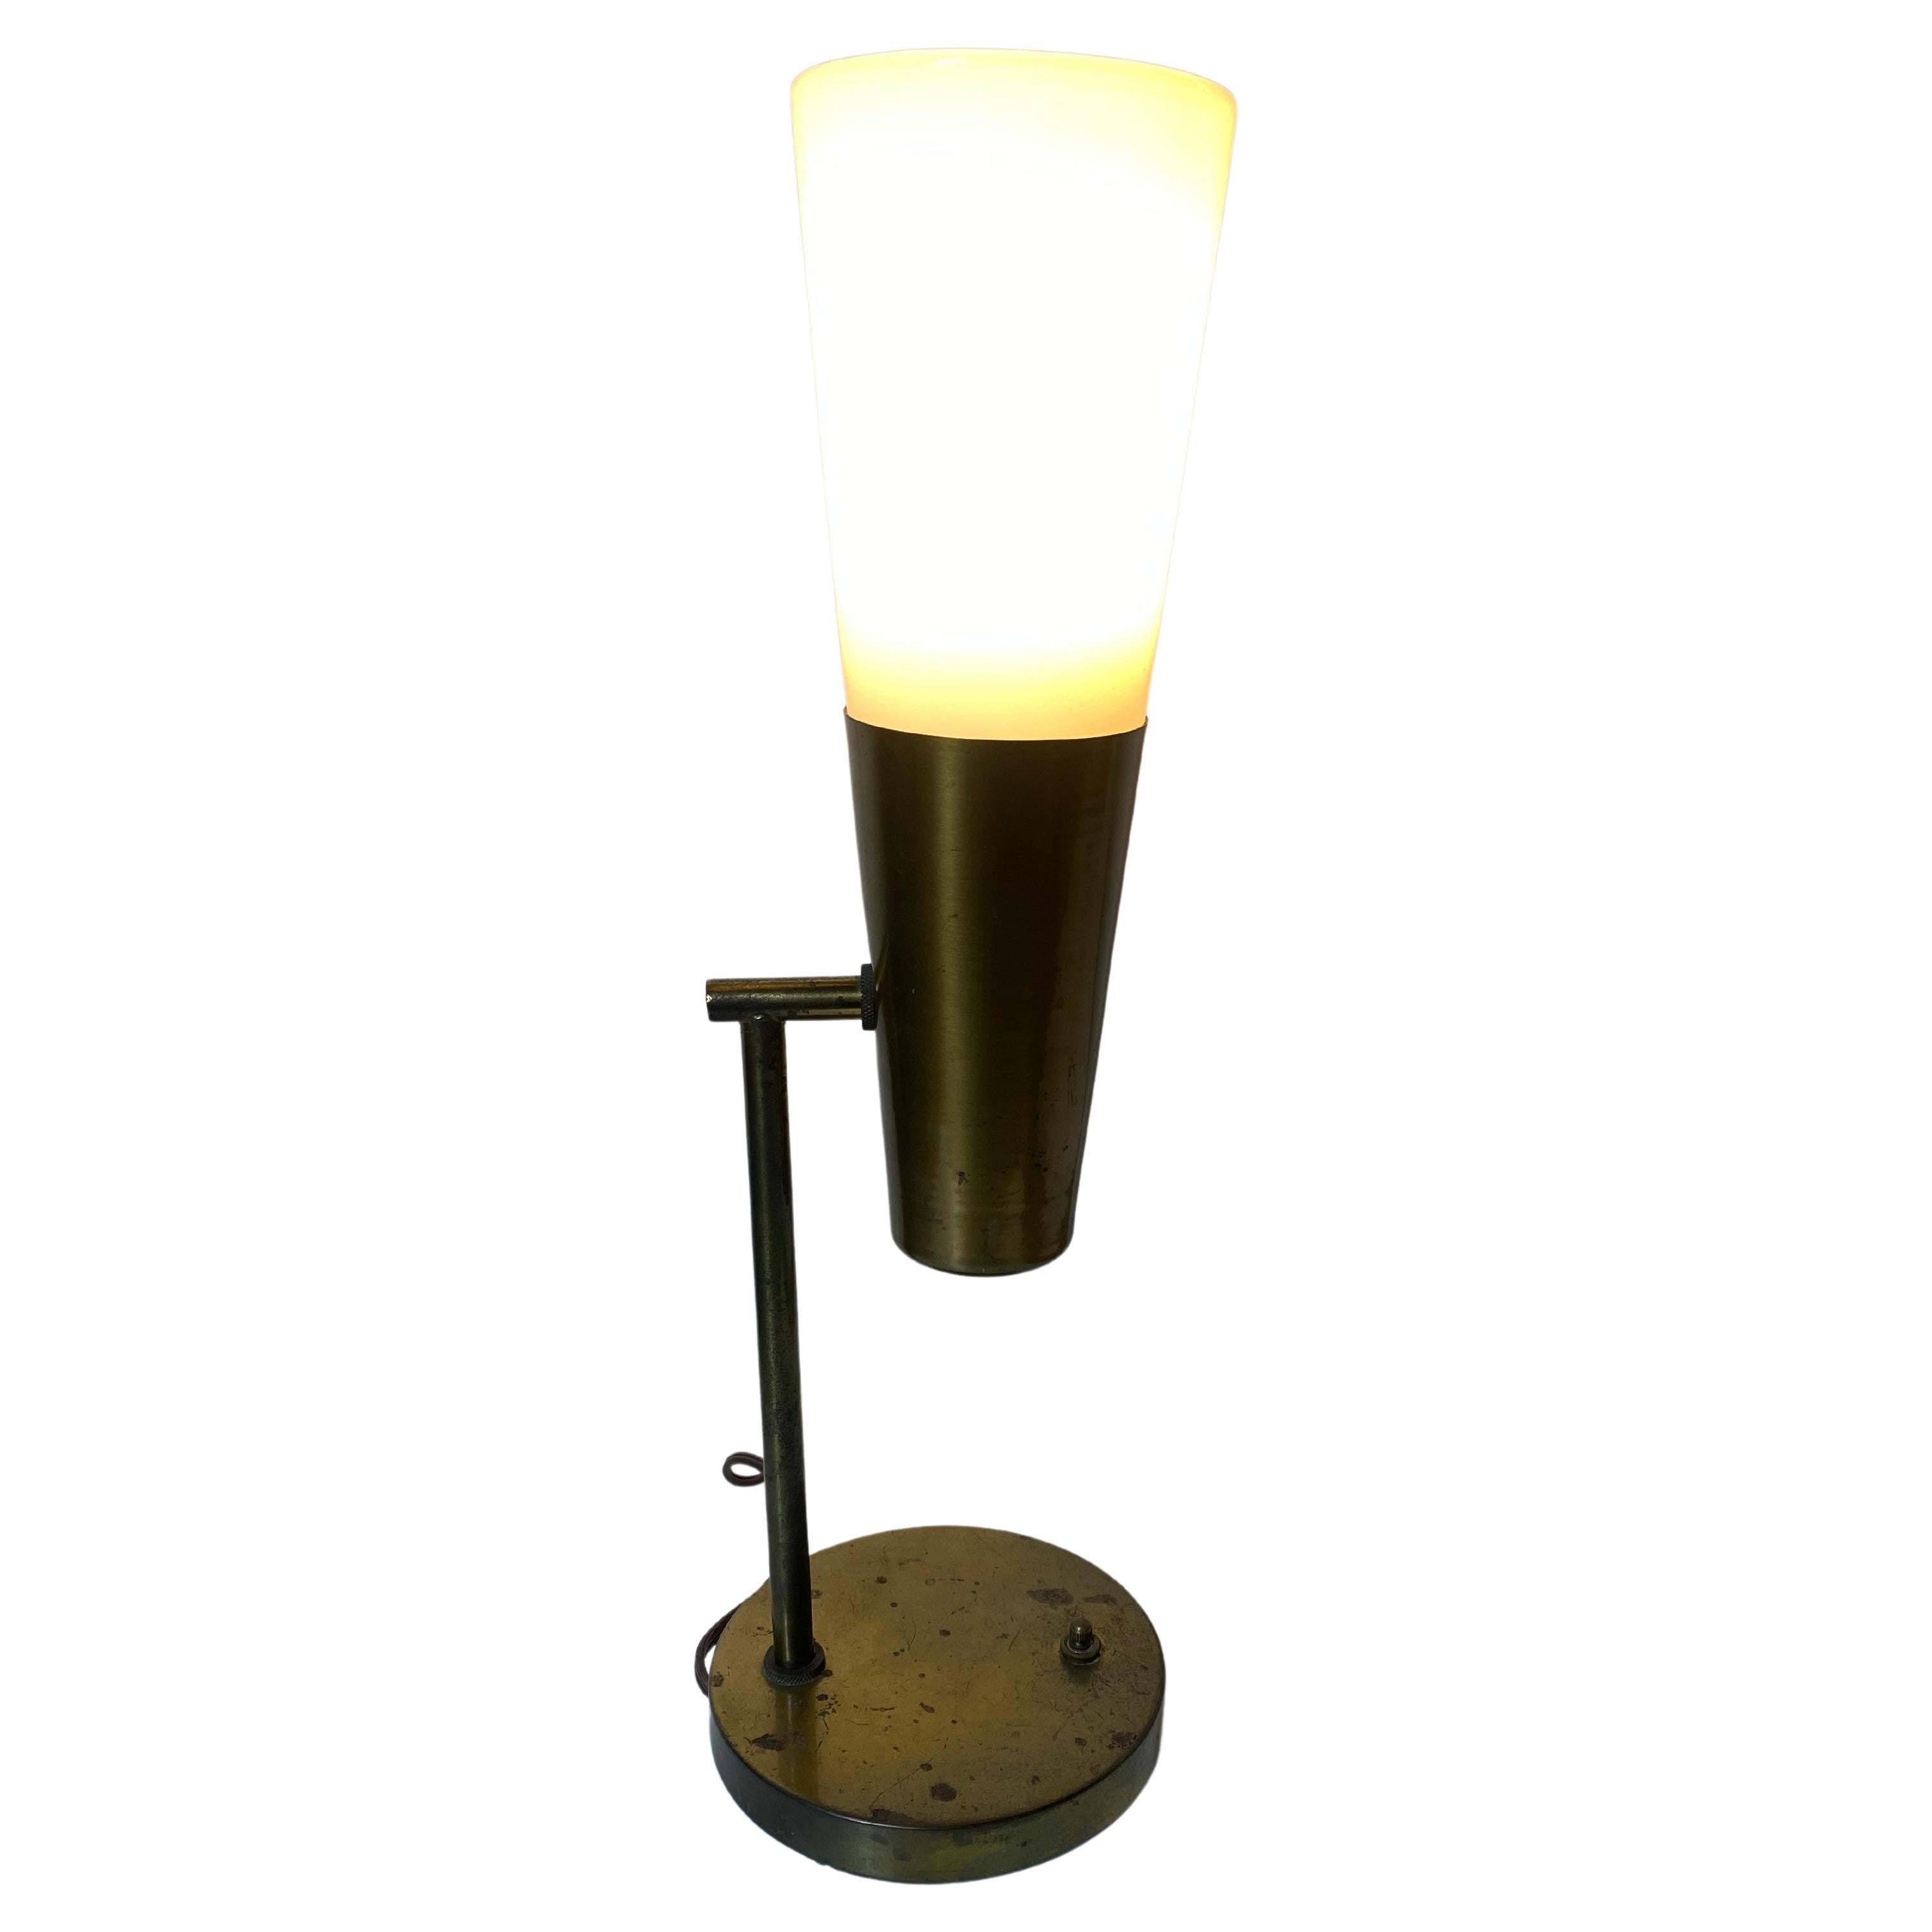 Rare lampe moderniste en laiton et verre conçue par Paul McCobb